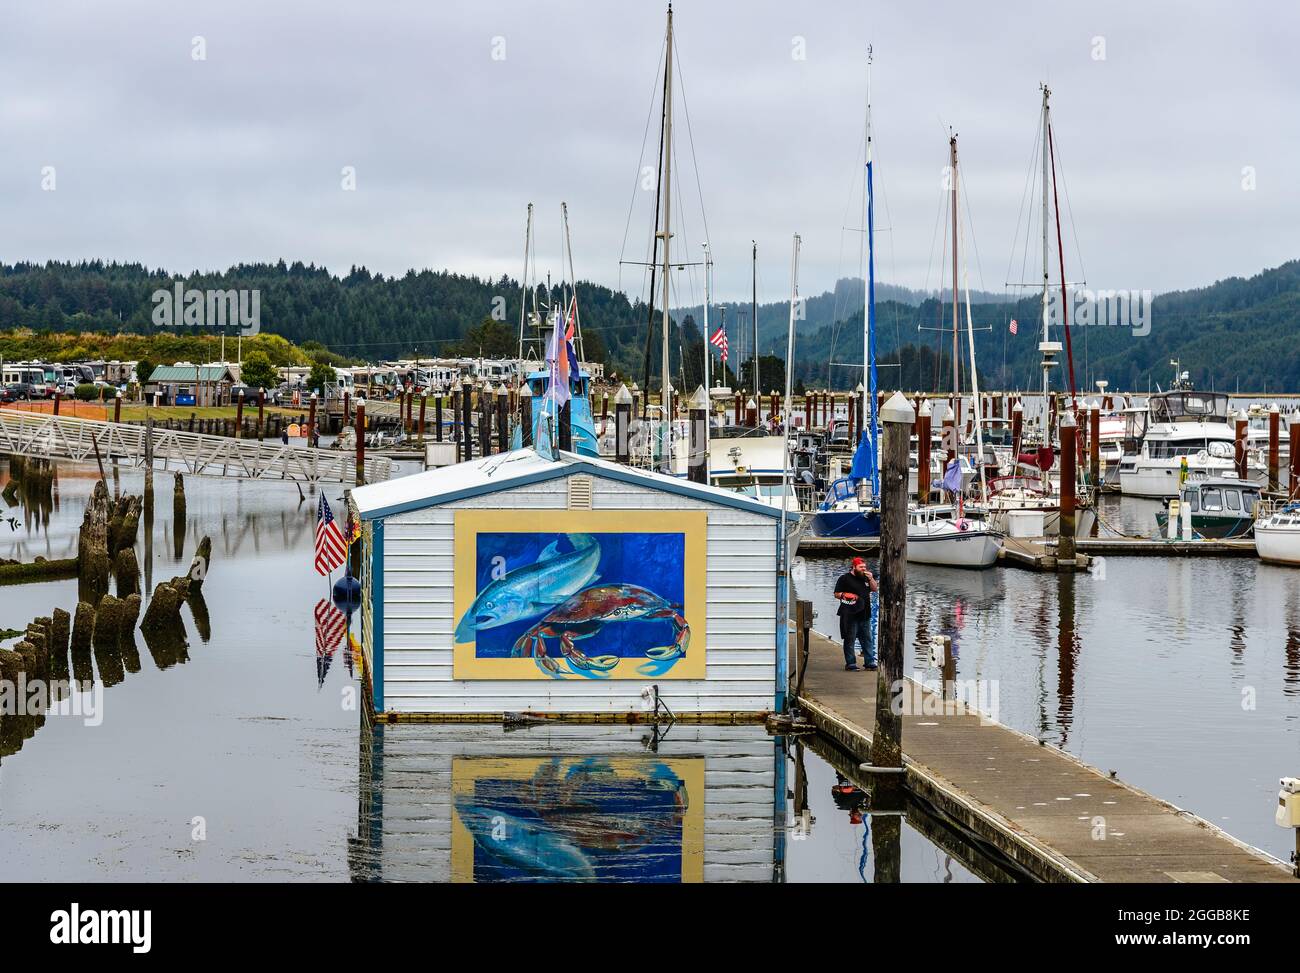 Hafen und Yachthafen in der Nähe der Küste einer historischen Kleinstadt. Florenz, Oregon, USA. Stockfoto